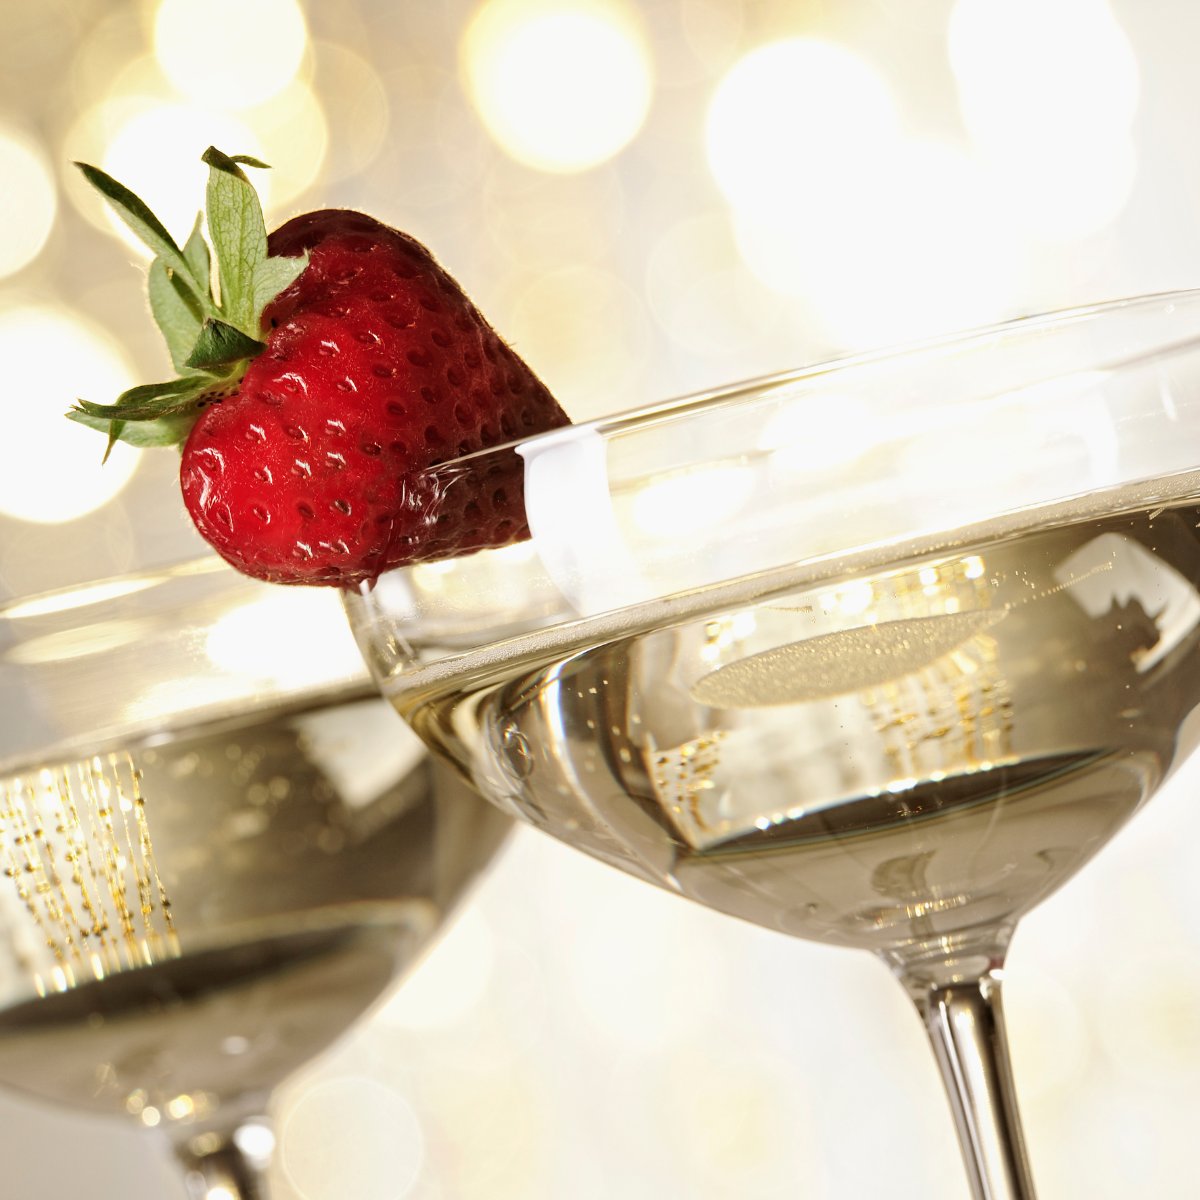 Aardbeien en champagne perfecte partners!